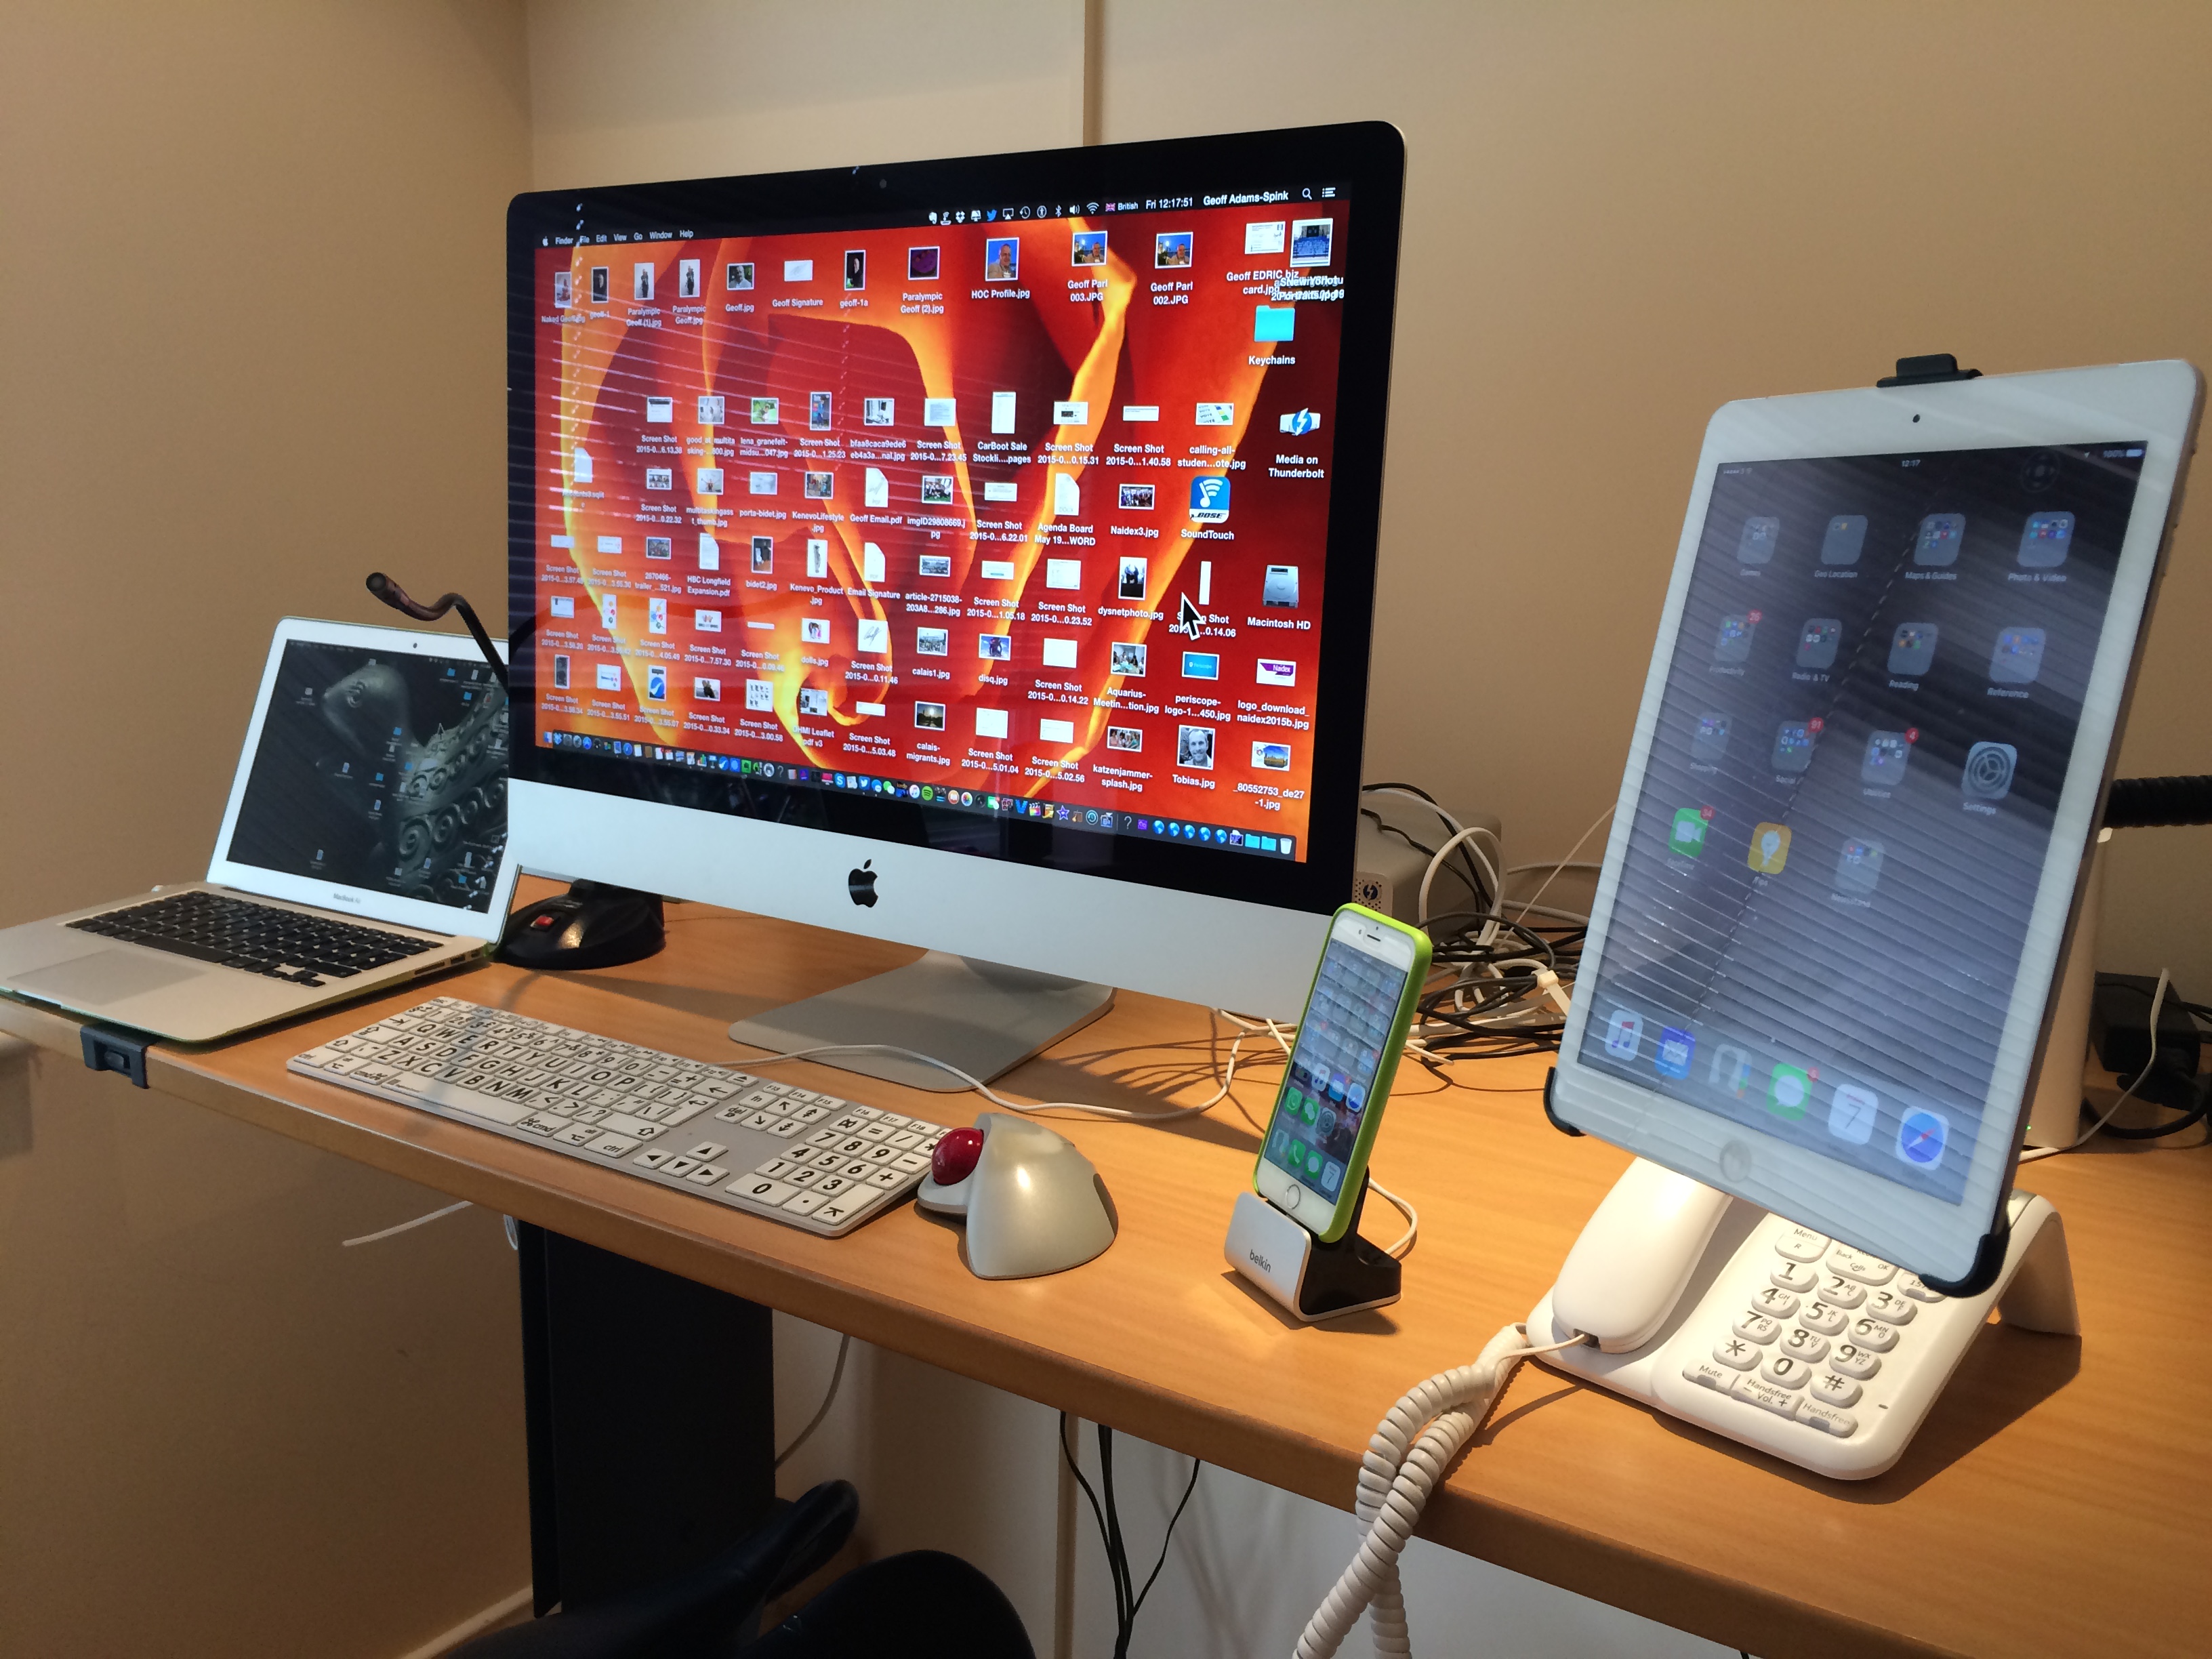 mac laptop or desktop for video editing